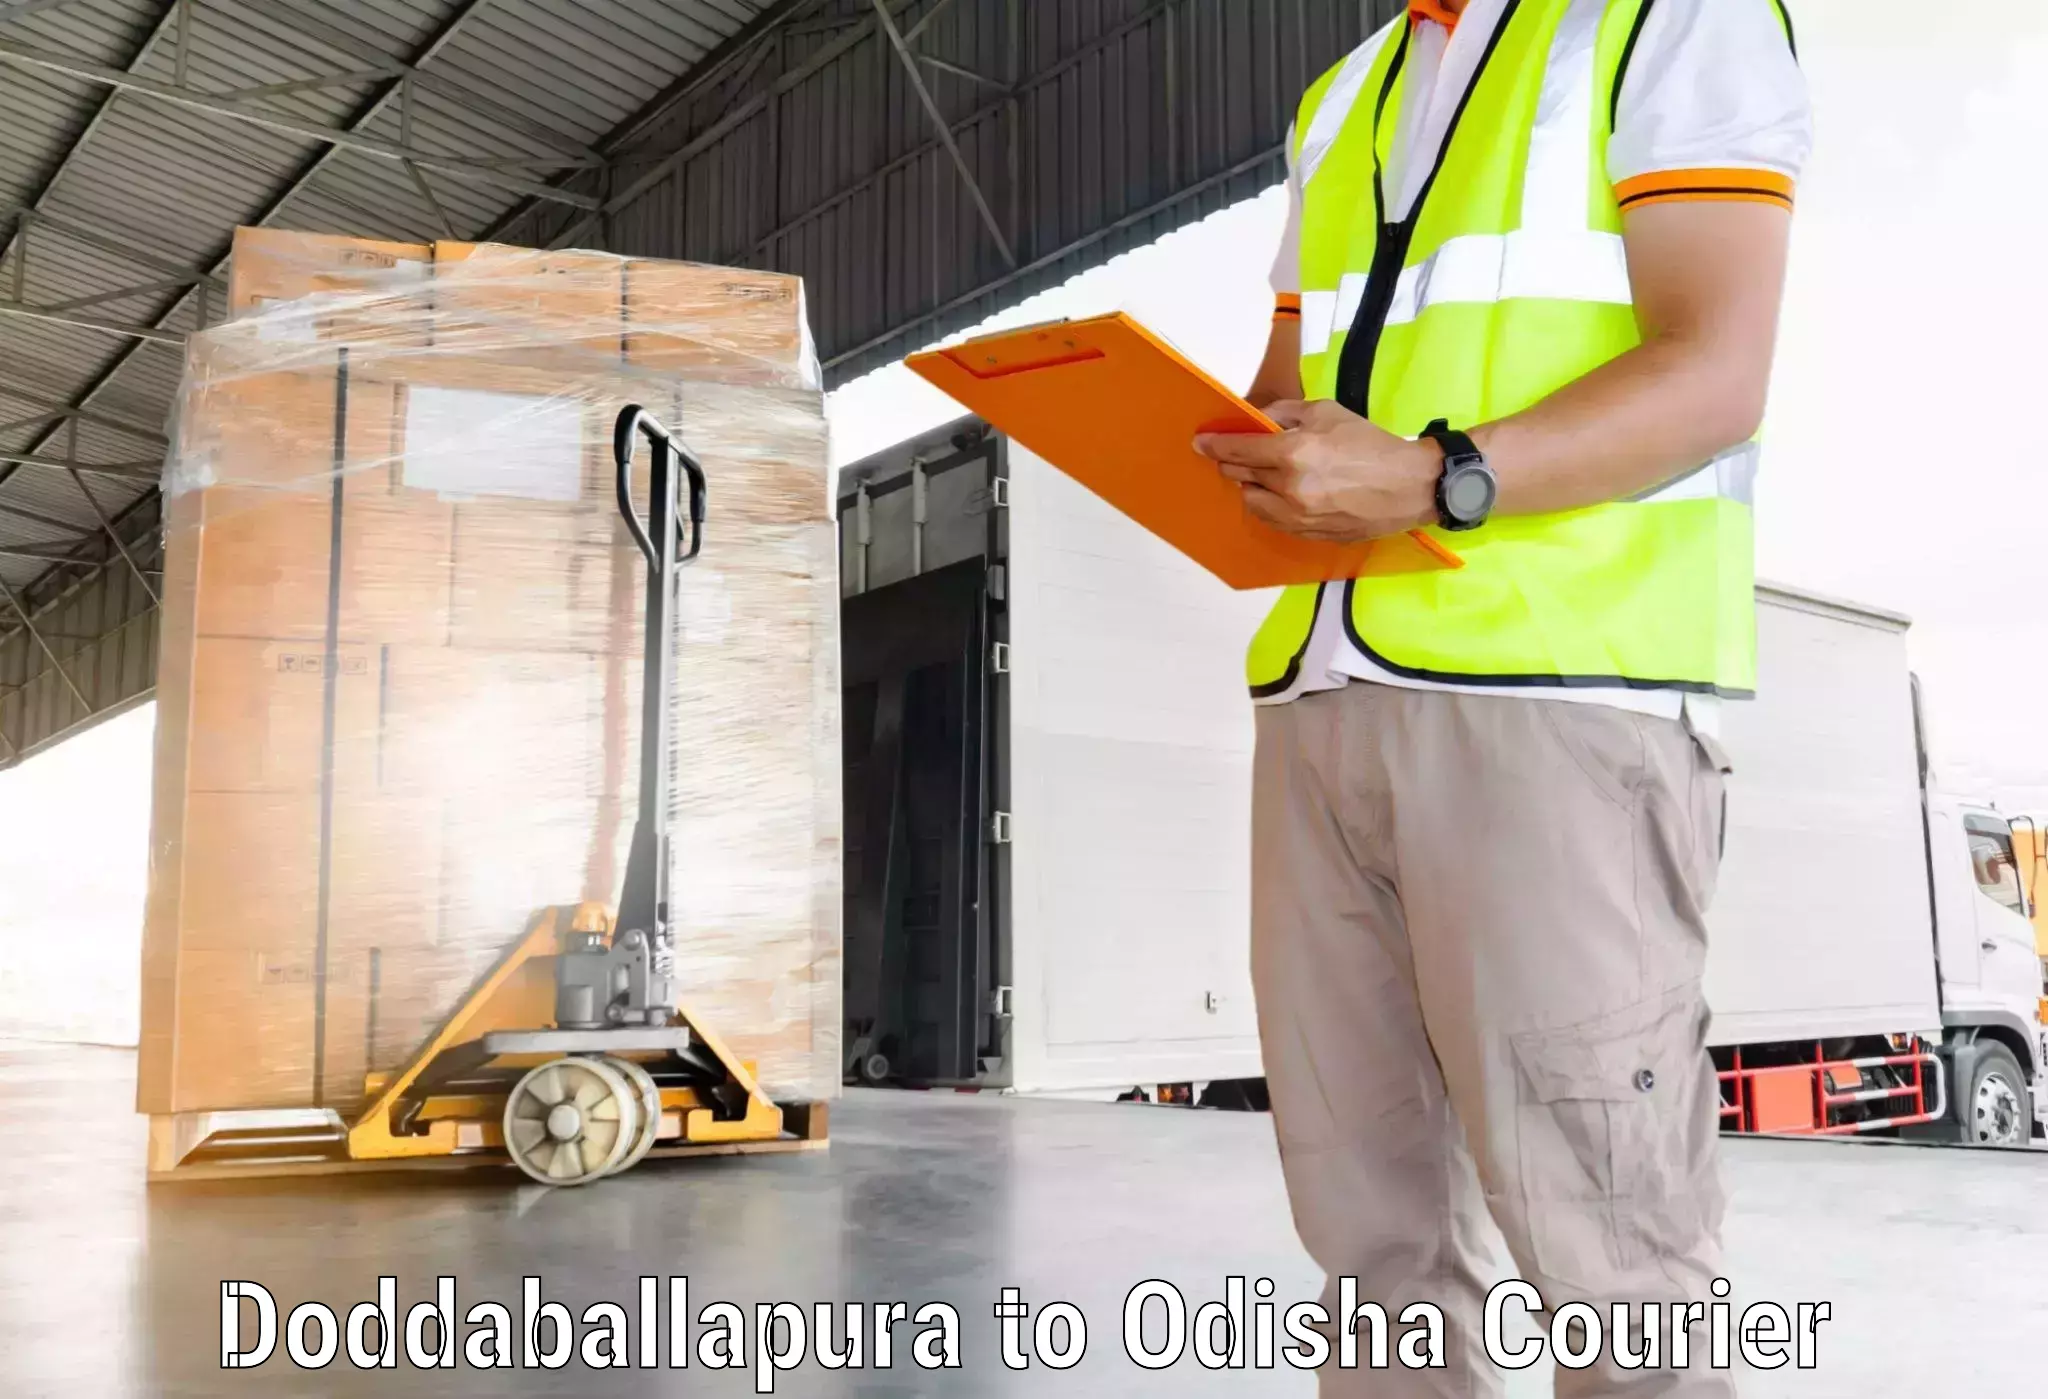 Nationwide shipping services Doddaballapura to Udayagiri Kandhamal